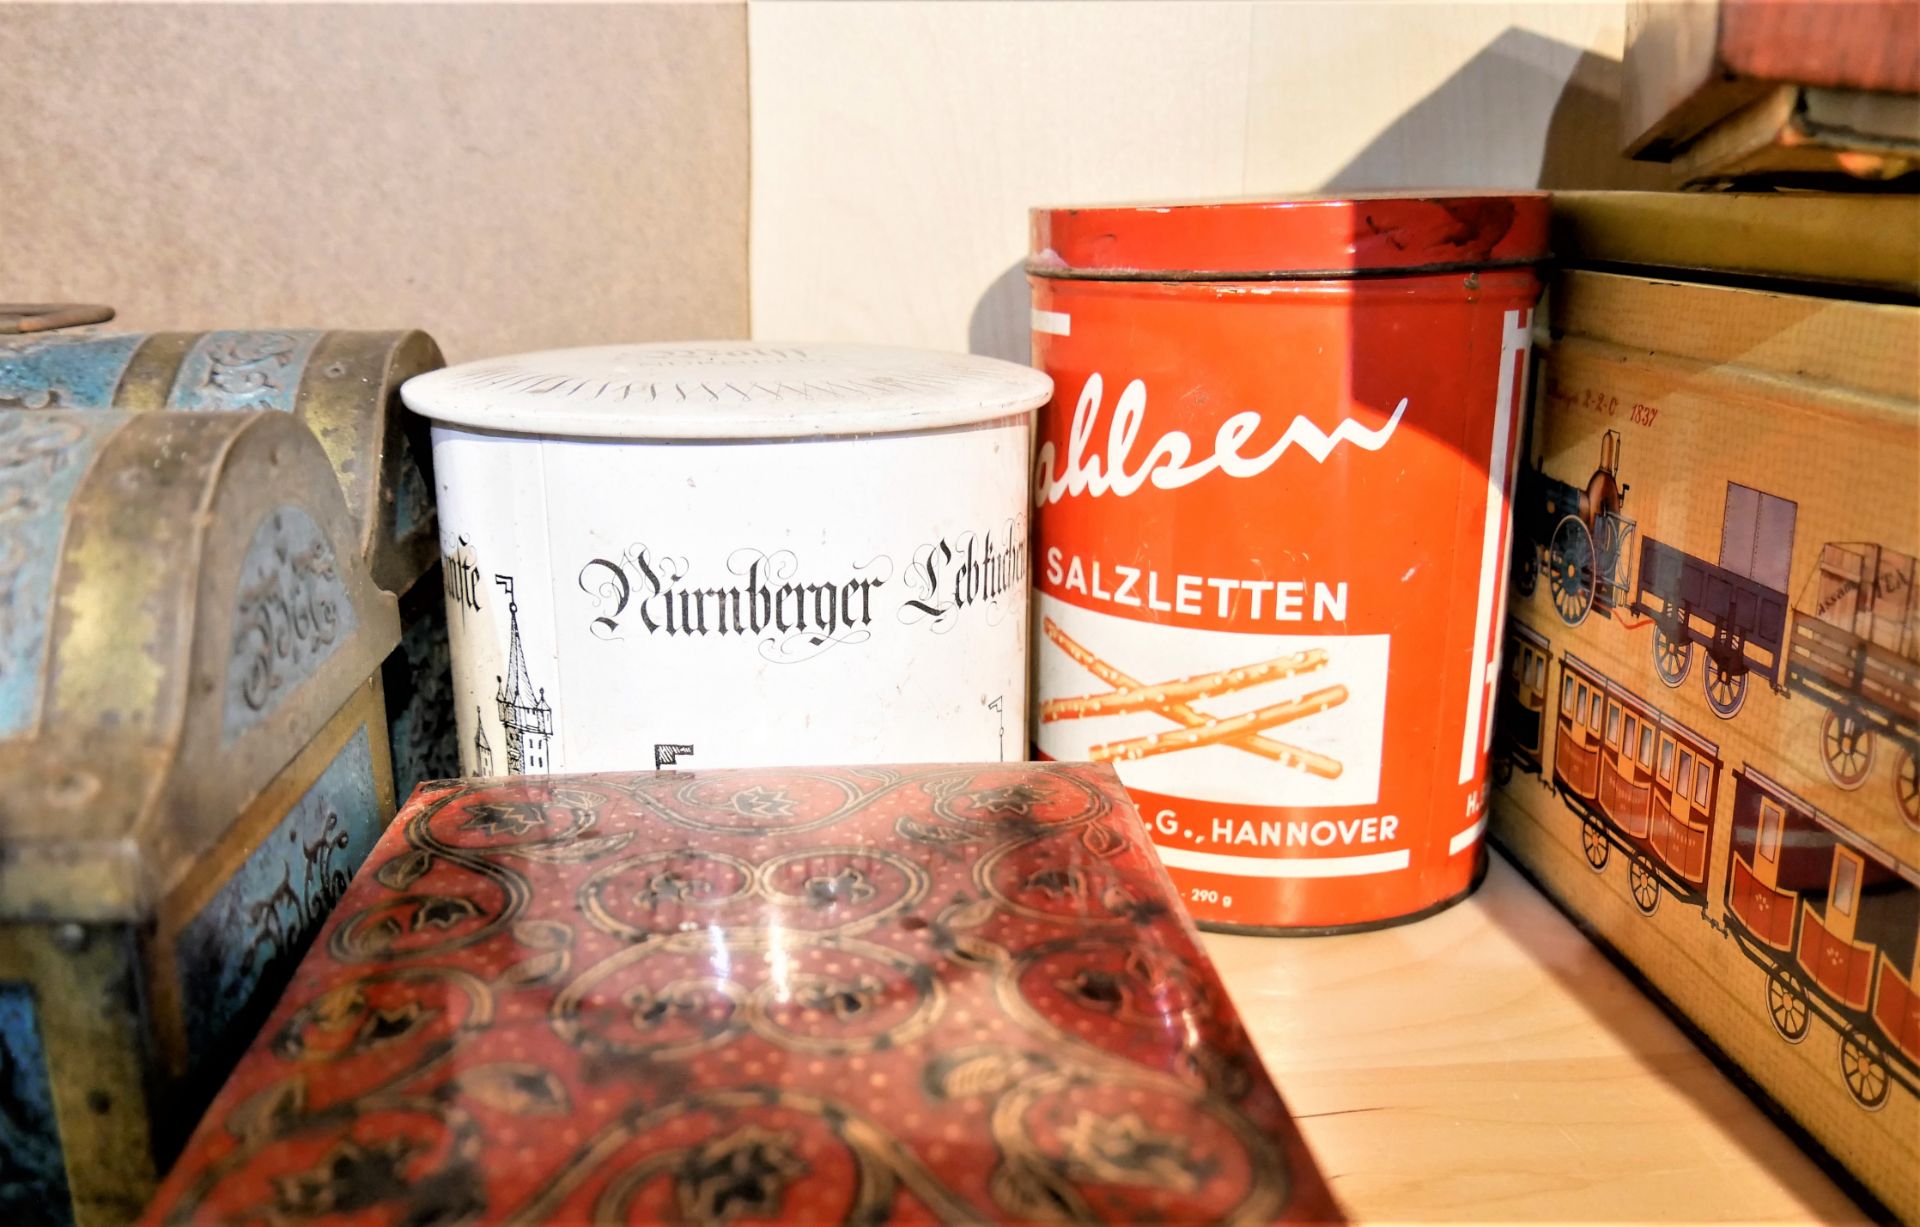 Lot alte Blechdosen, dabei Nürnberger Lebkuchen, Bahlsen Salzletten etc. - Image 2 of 2